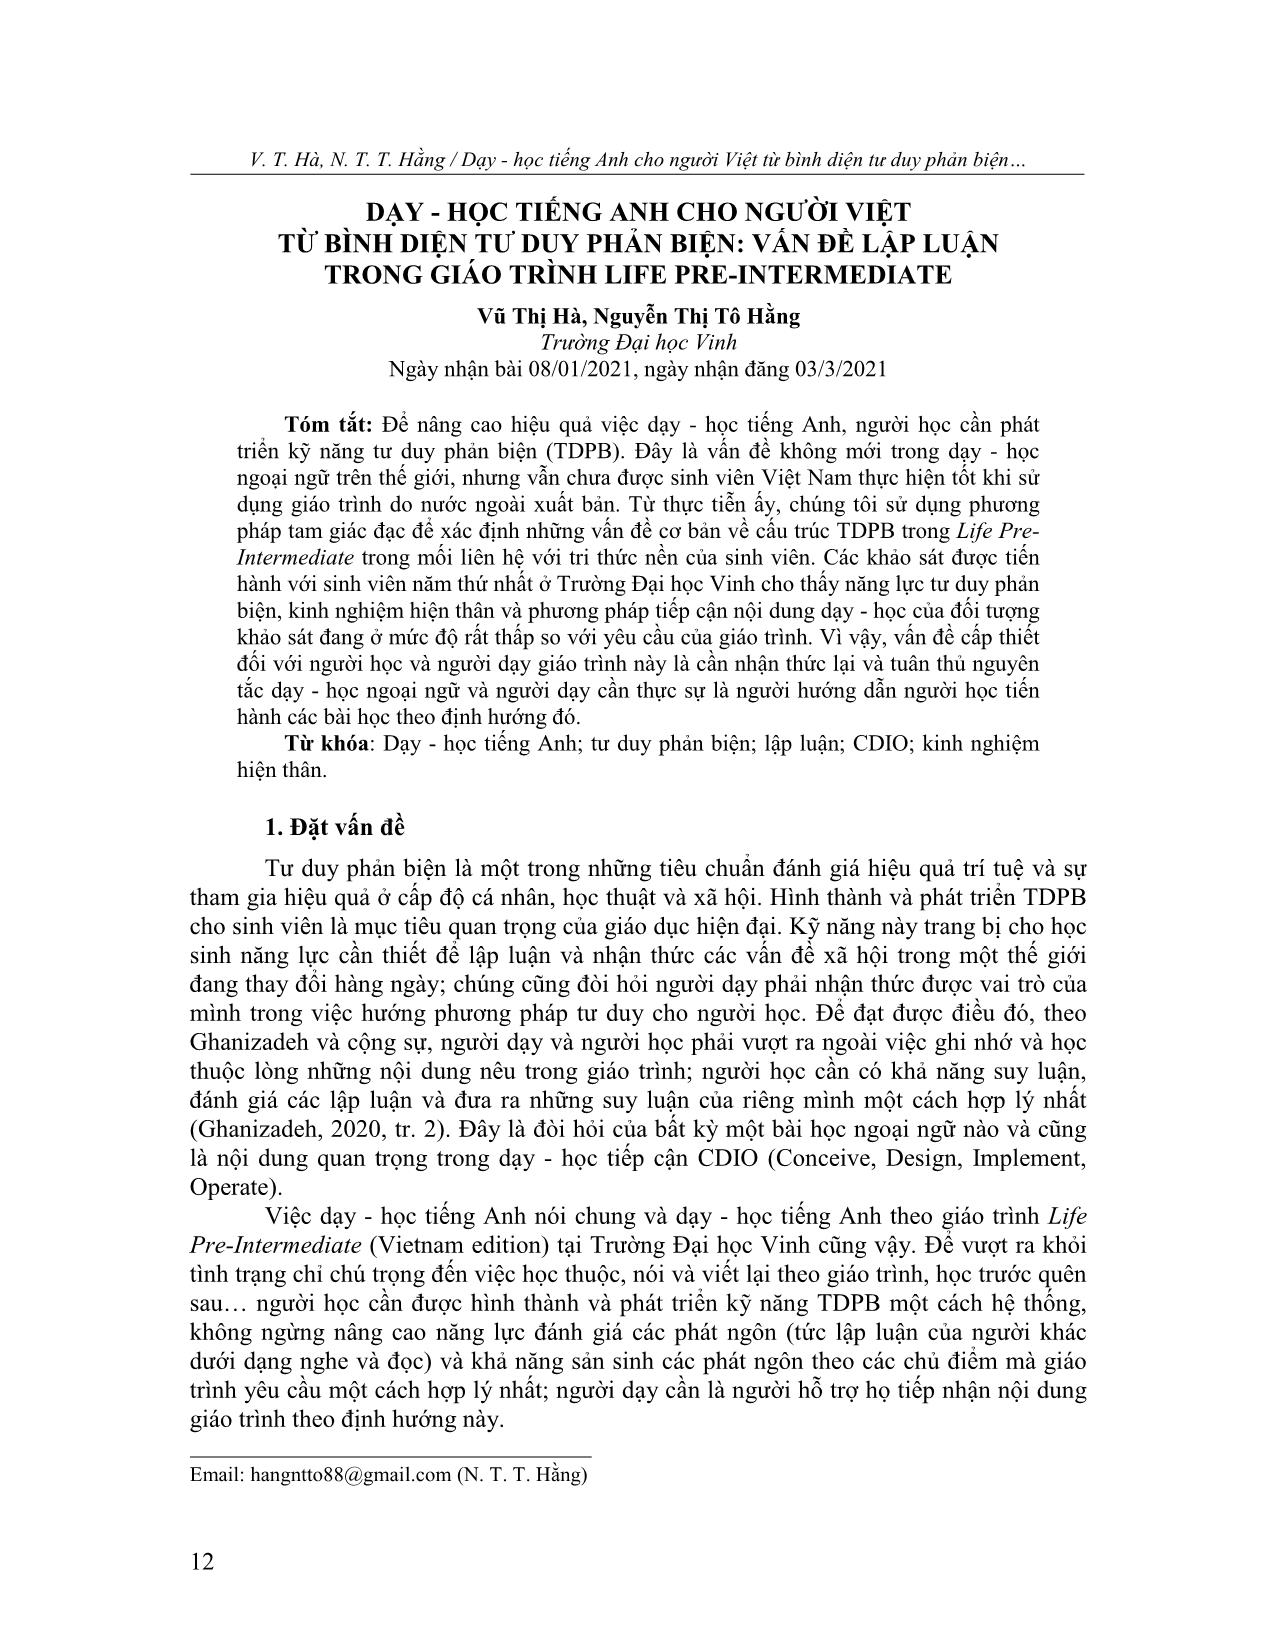 Dạy - học tiếng Anh cho người Việt từ bình diện tư duy phản biện: Vấn đề lập luận trong giáo trình Life Pre-Intermediate trang 1